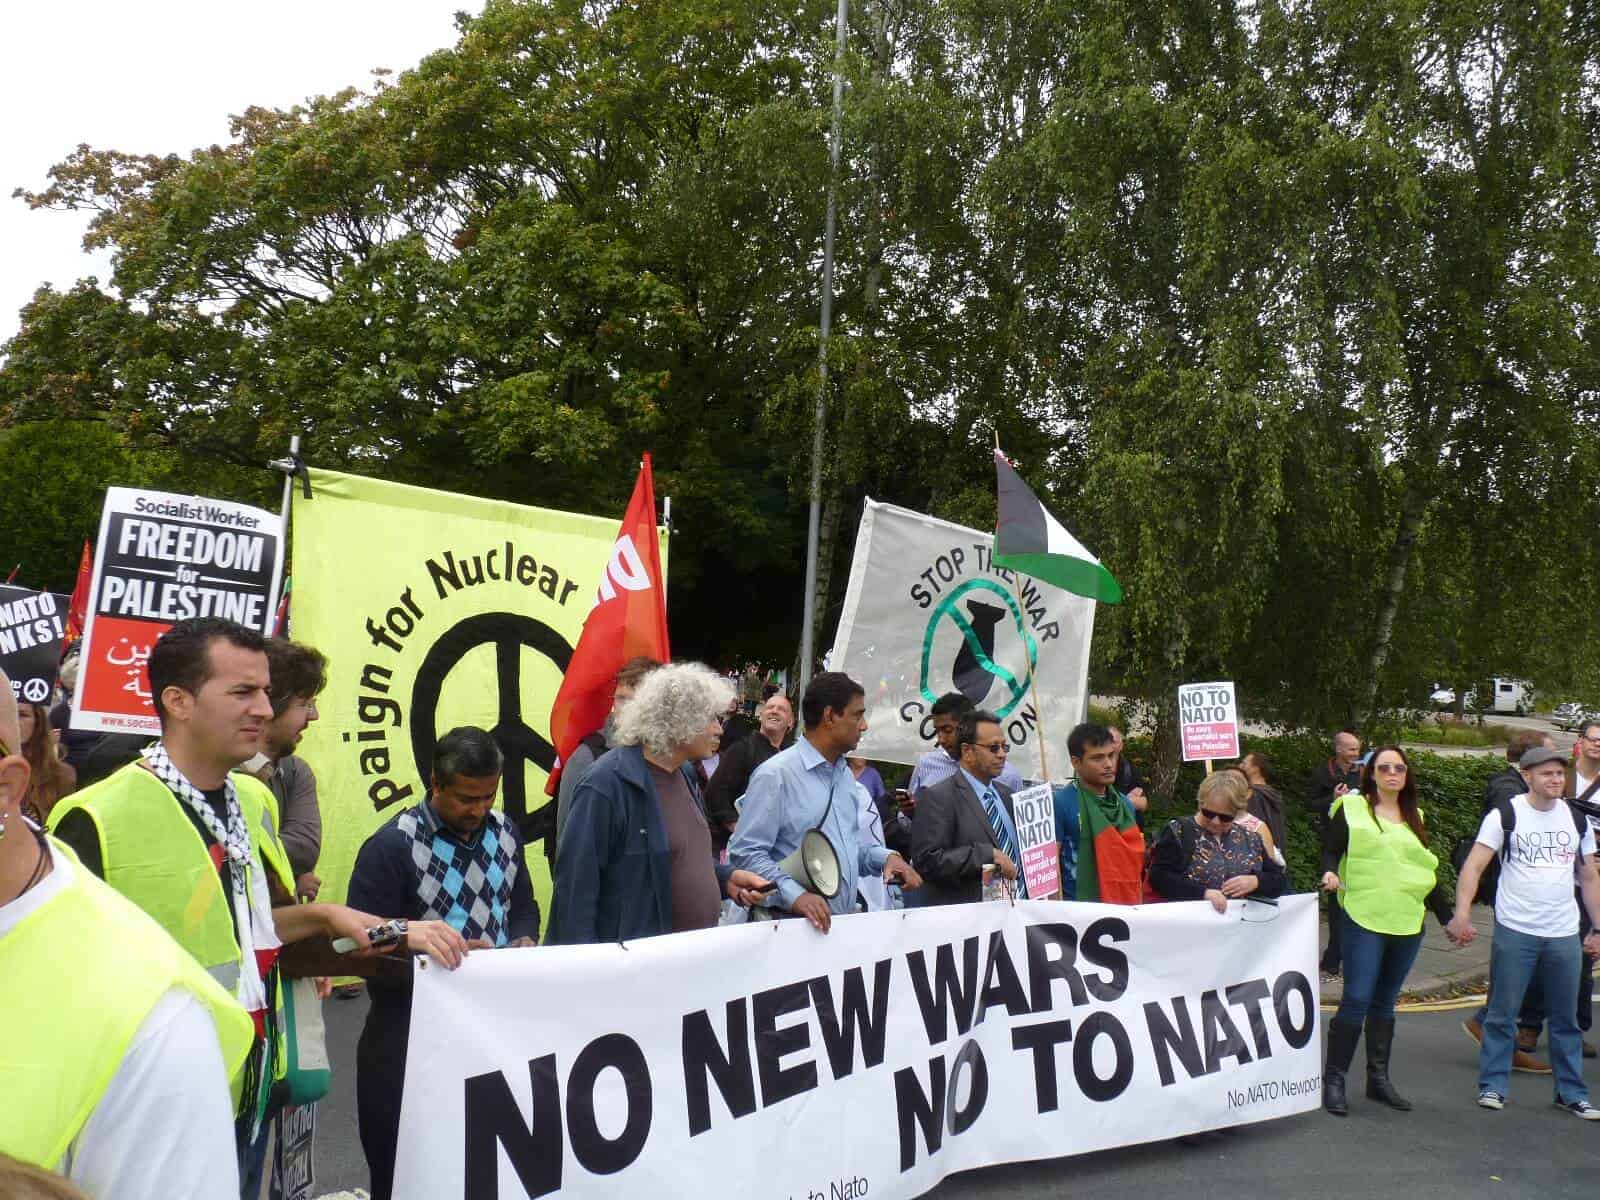 Protesters Rip into NATO representatives at Panel